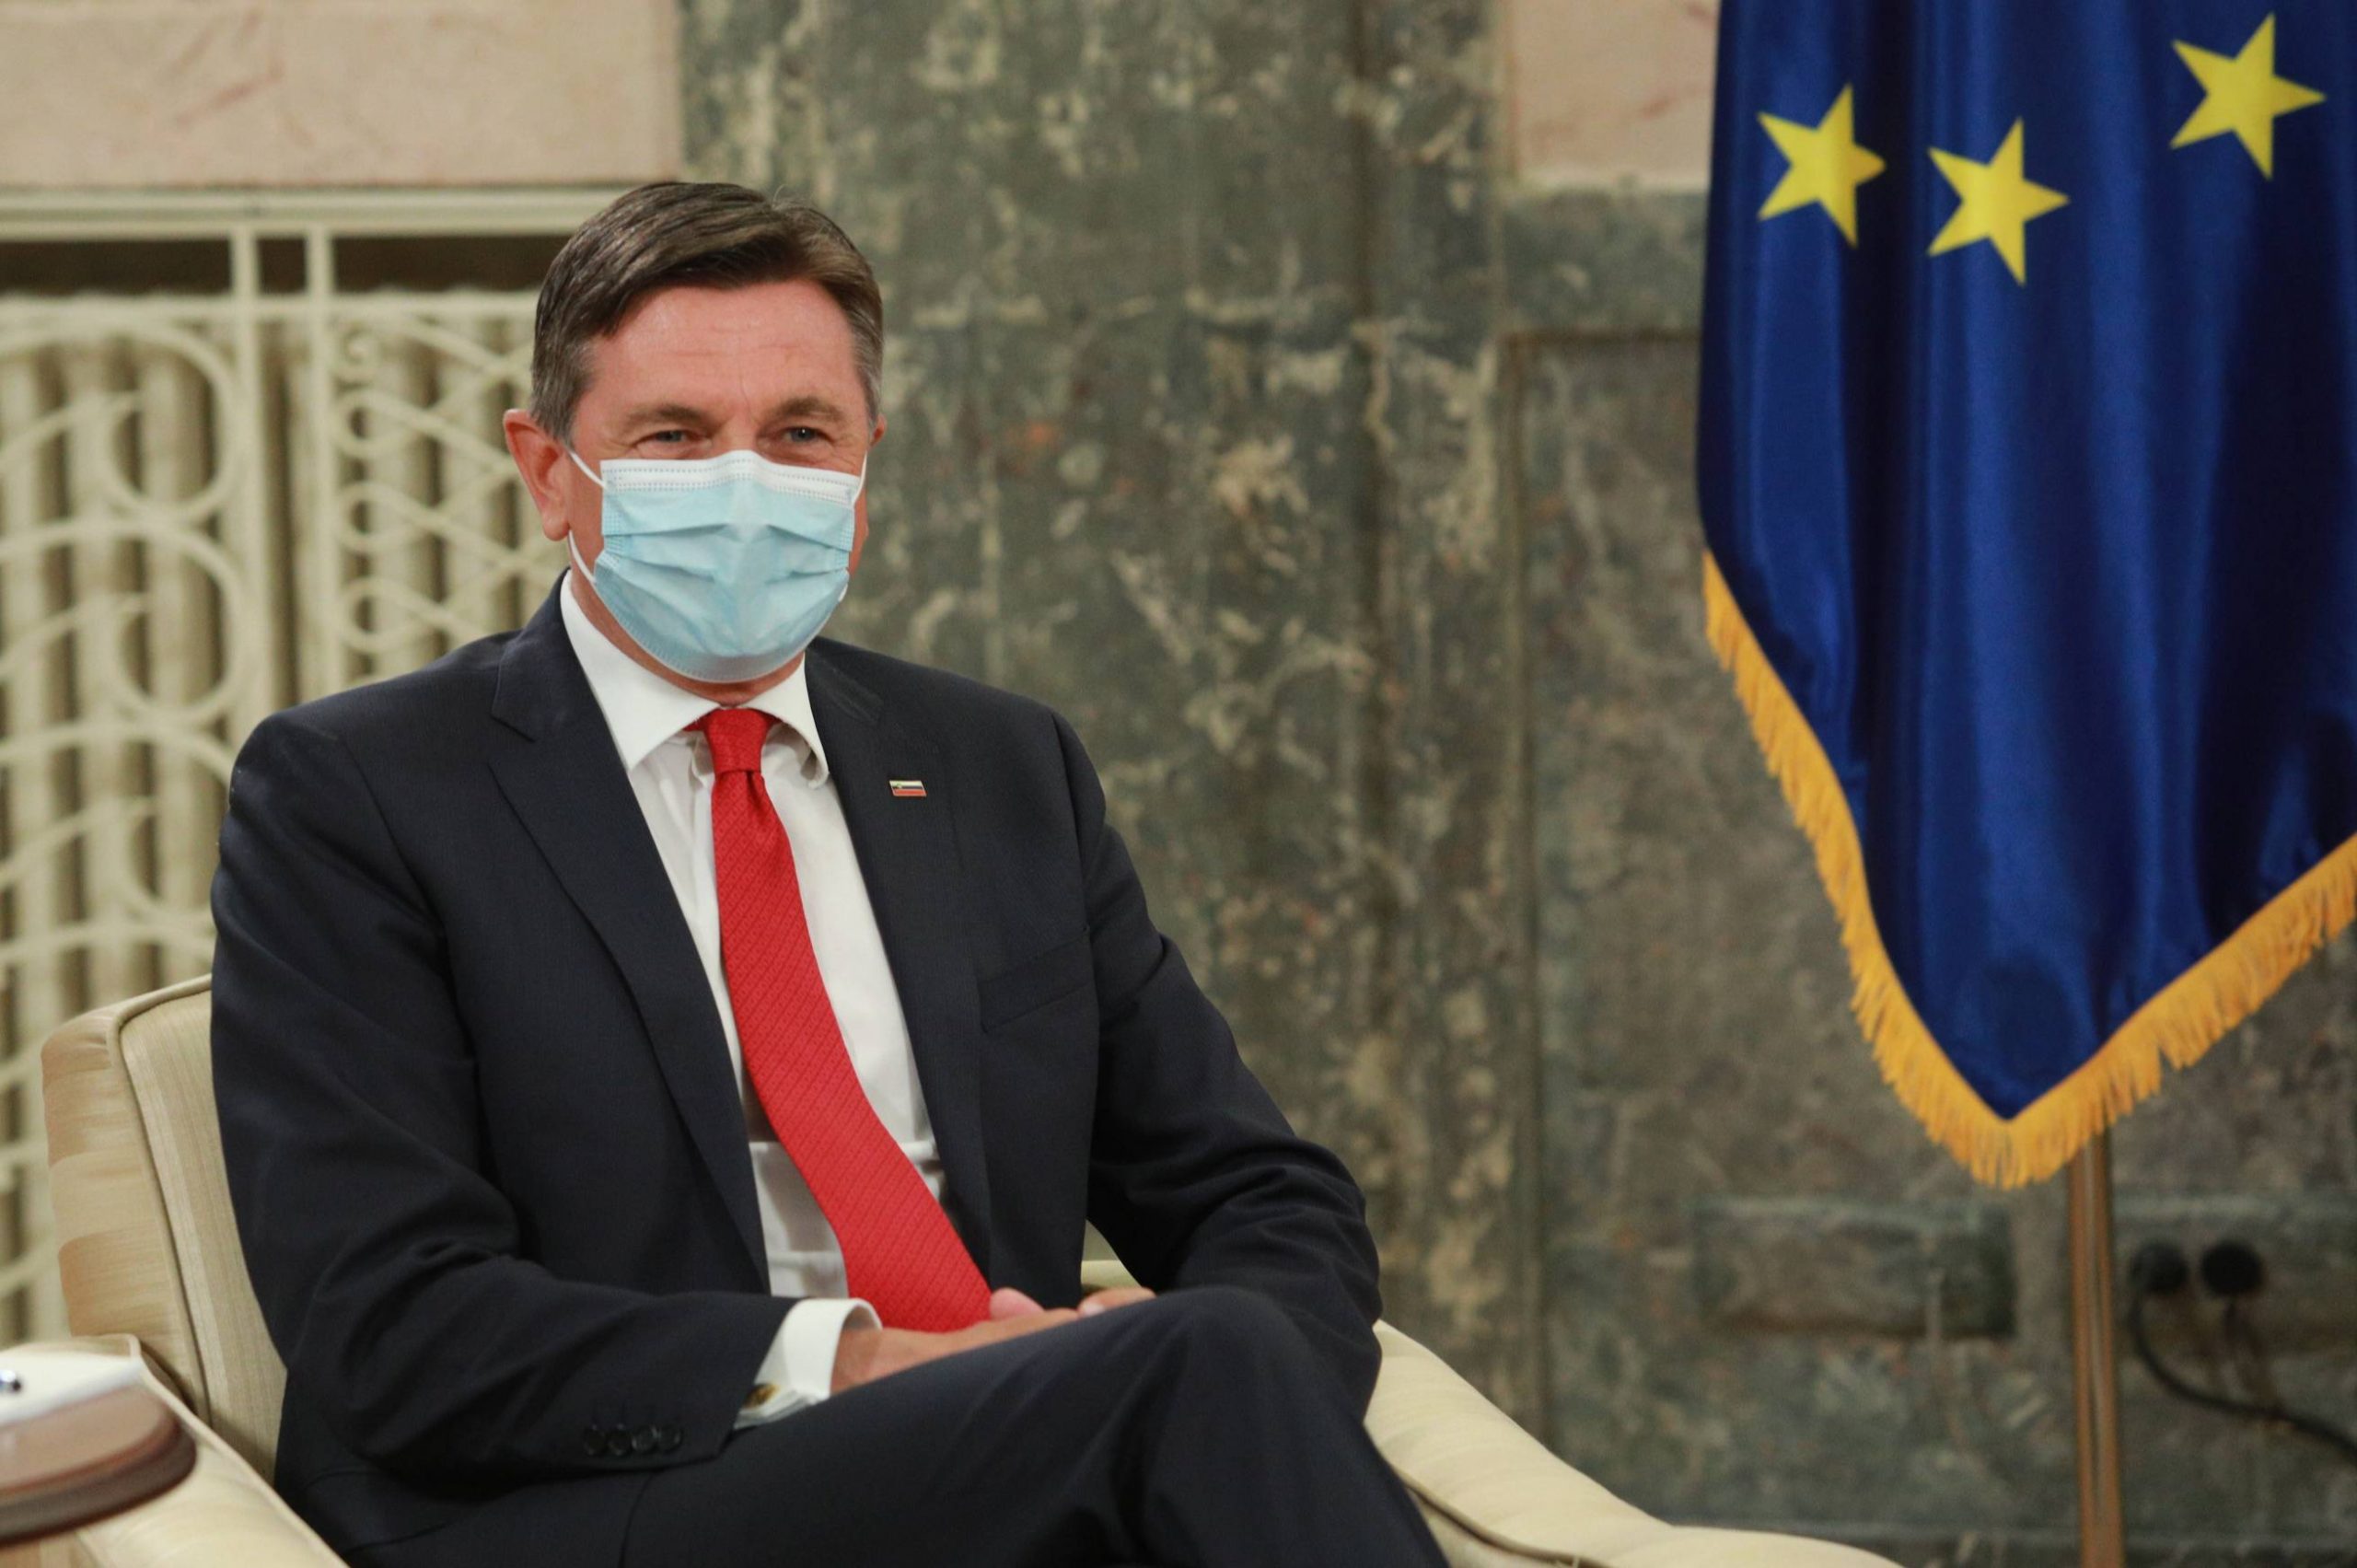 Predsednik Slovenije Borut Pahor u nedelju u poseti Beogradu 1